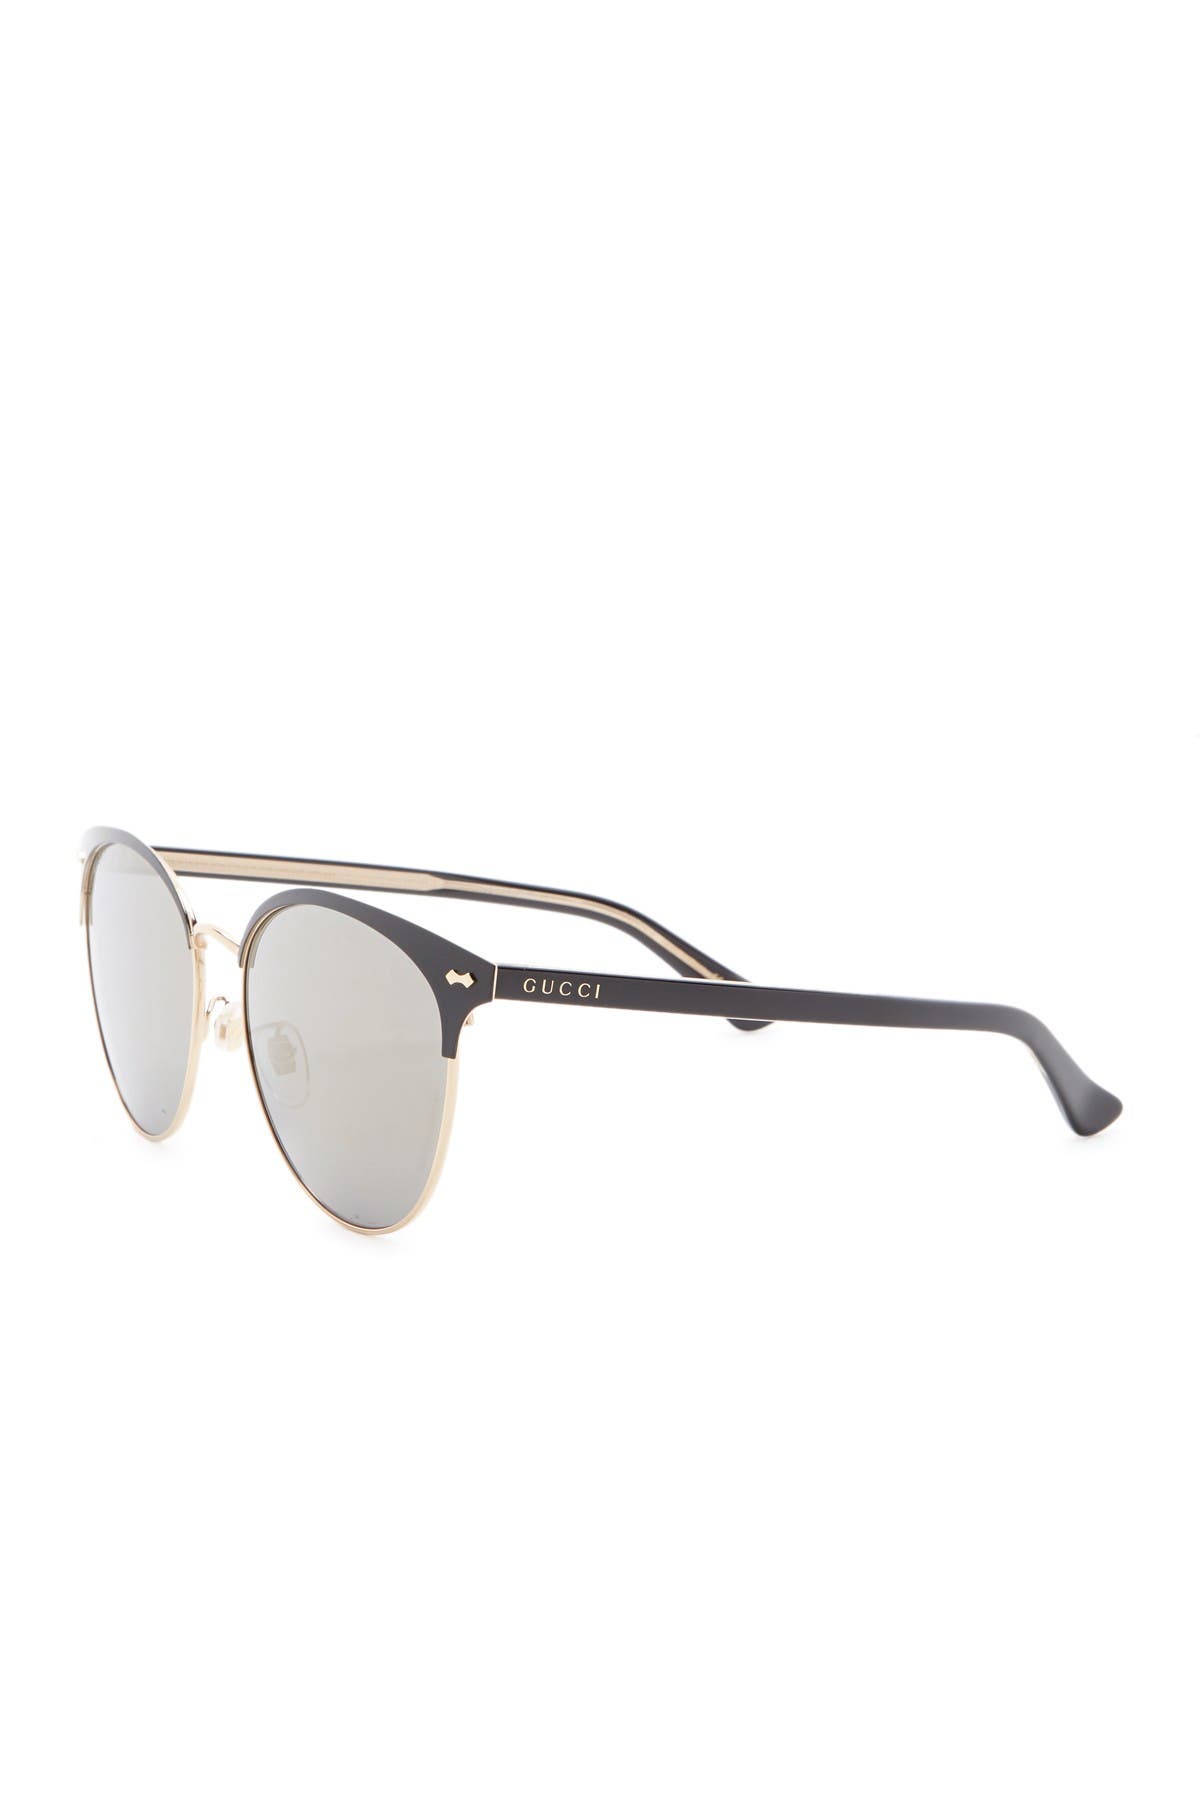 GUCCI | 58mm Clubmaster Sunglasses 